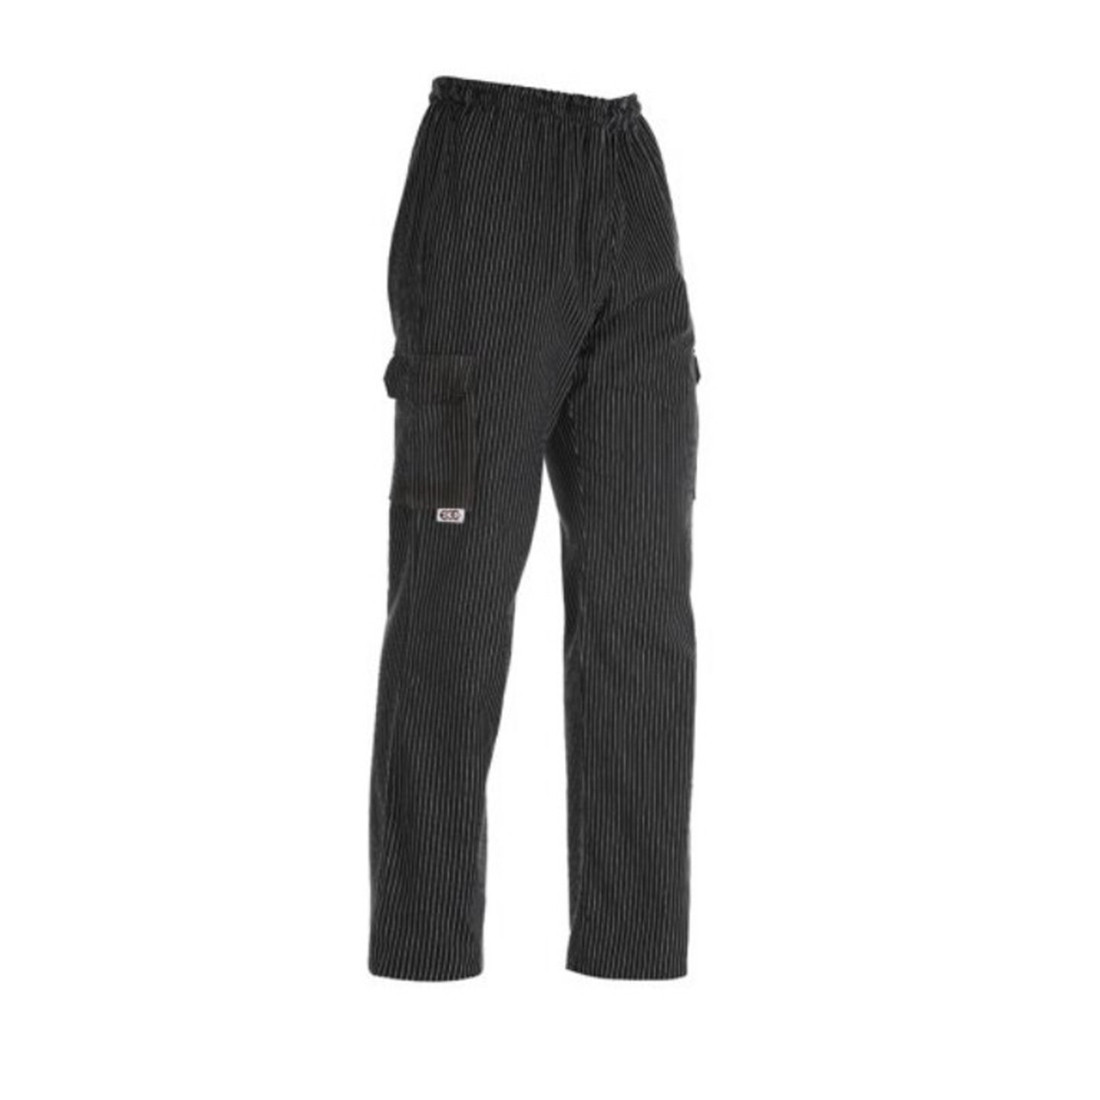 Pantalon Coulisse Leg Pocket, 100% coton - Les vêtements de protection